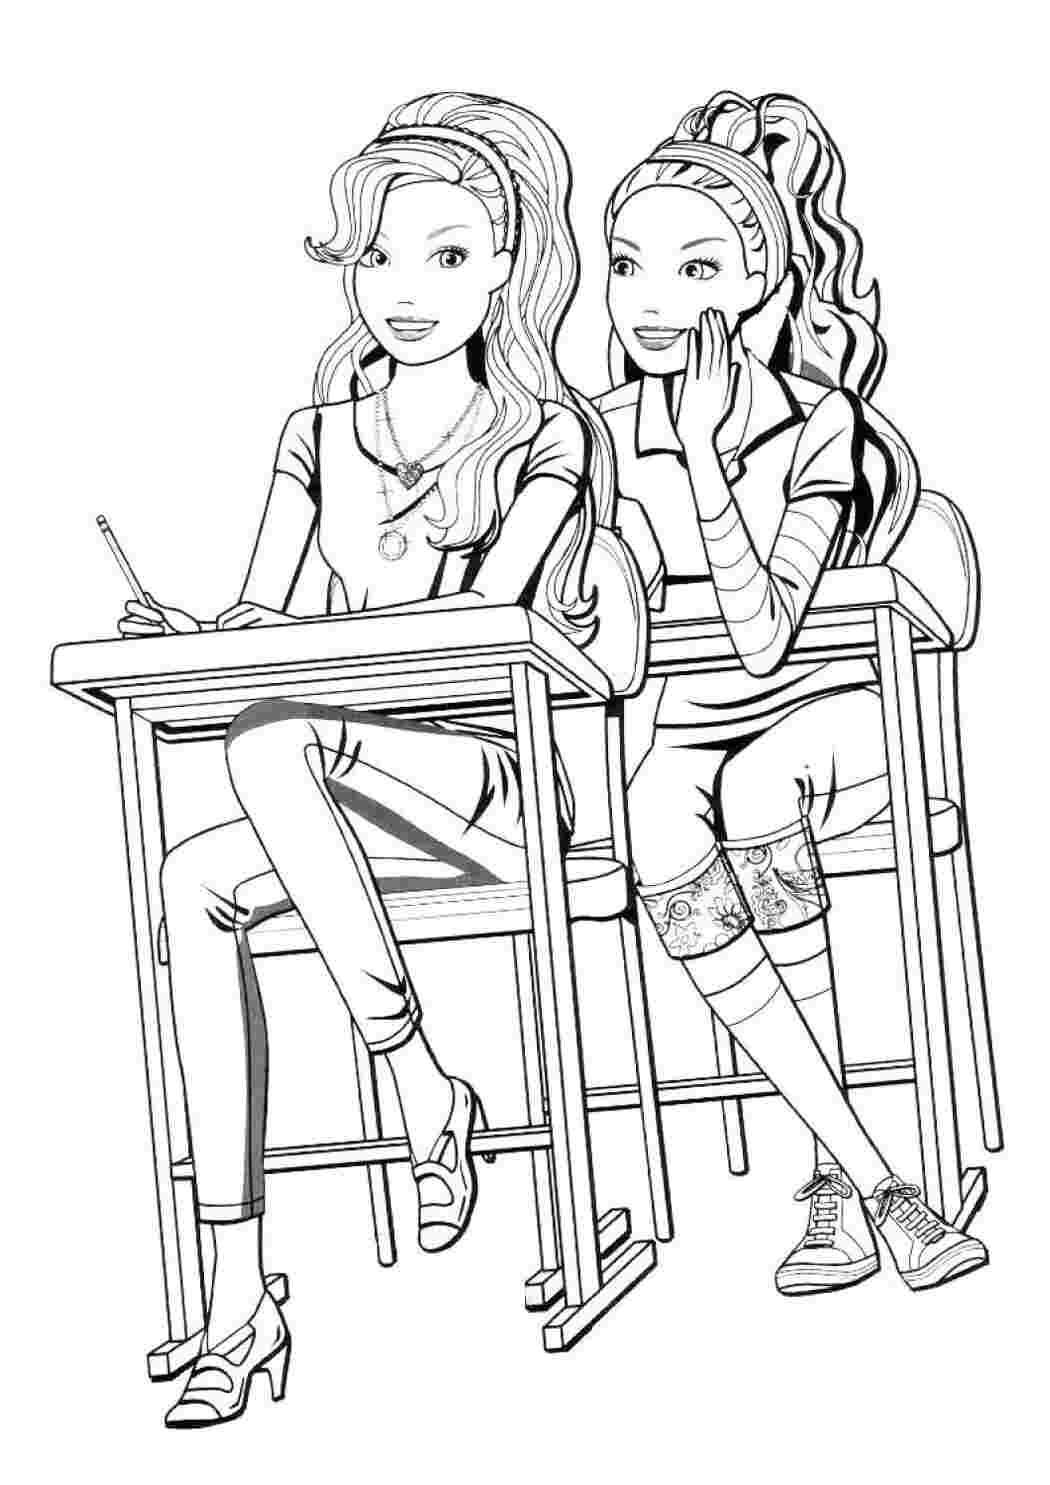 Раскраски Барби и ее подруга в школе ,девочки учатся в школе и сидят за партами,